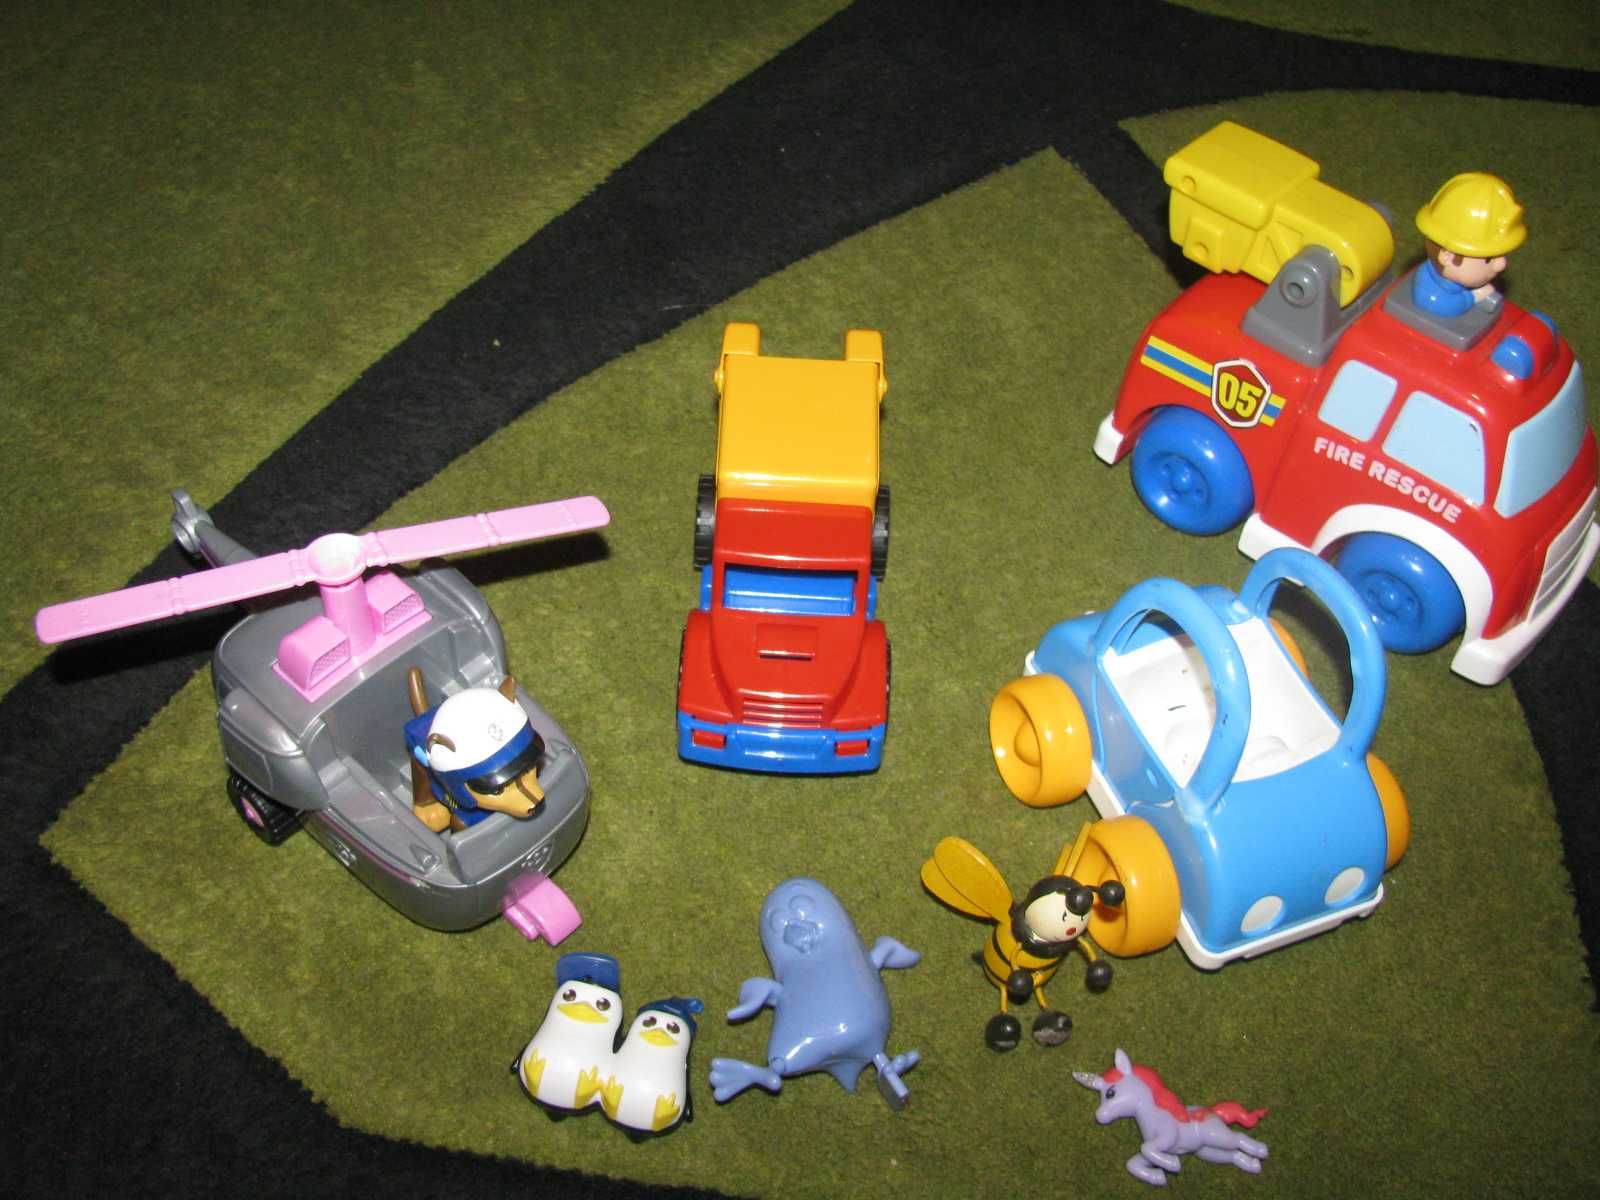 zabawki ze zdjęcia autka